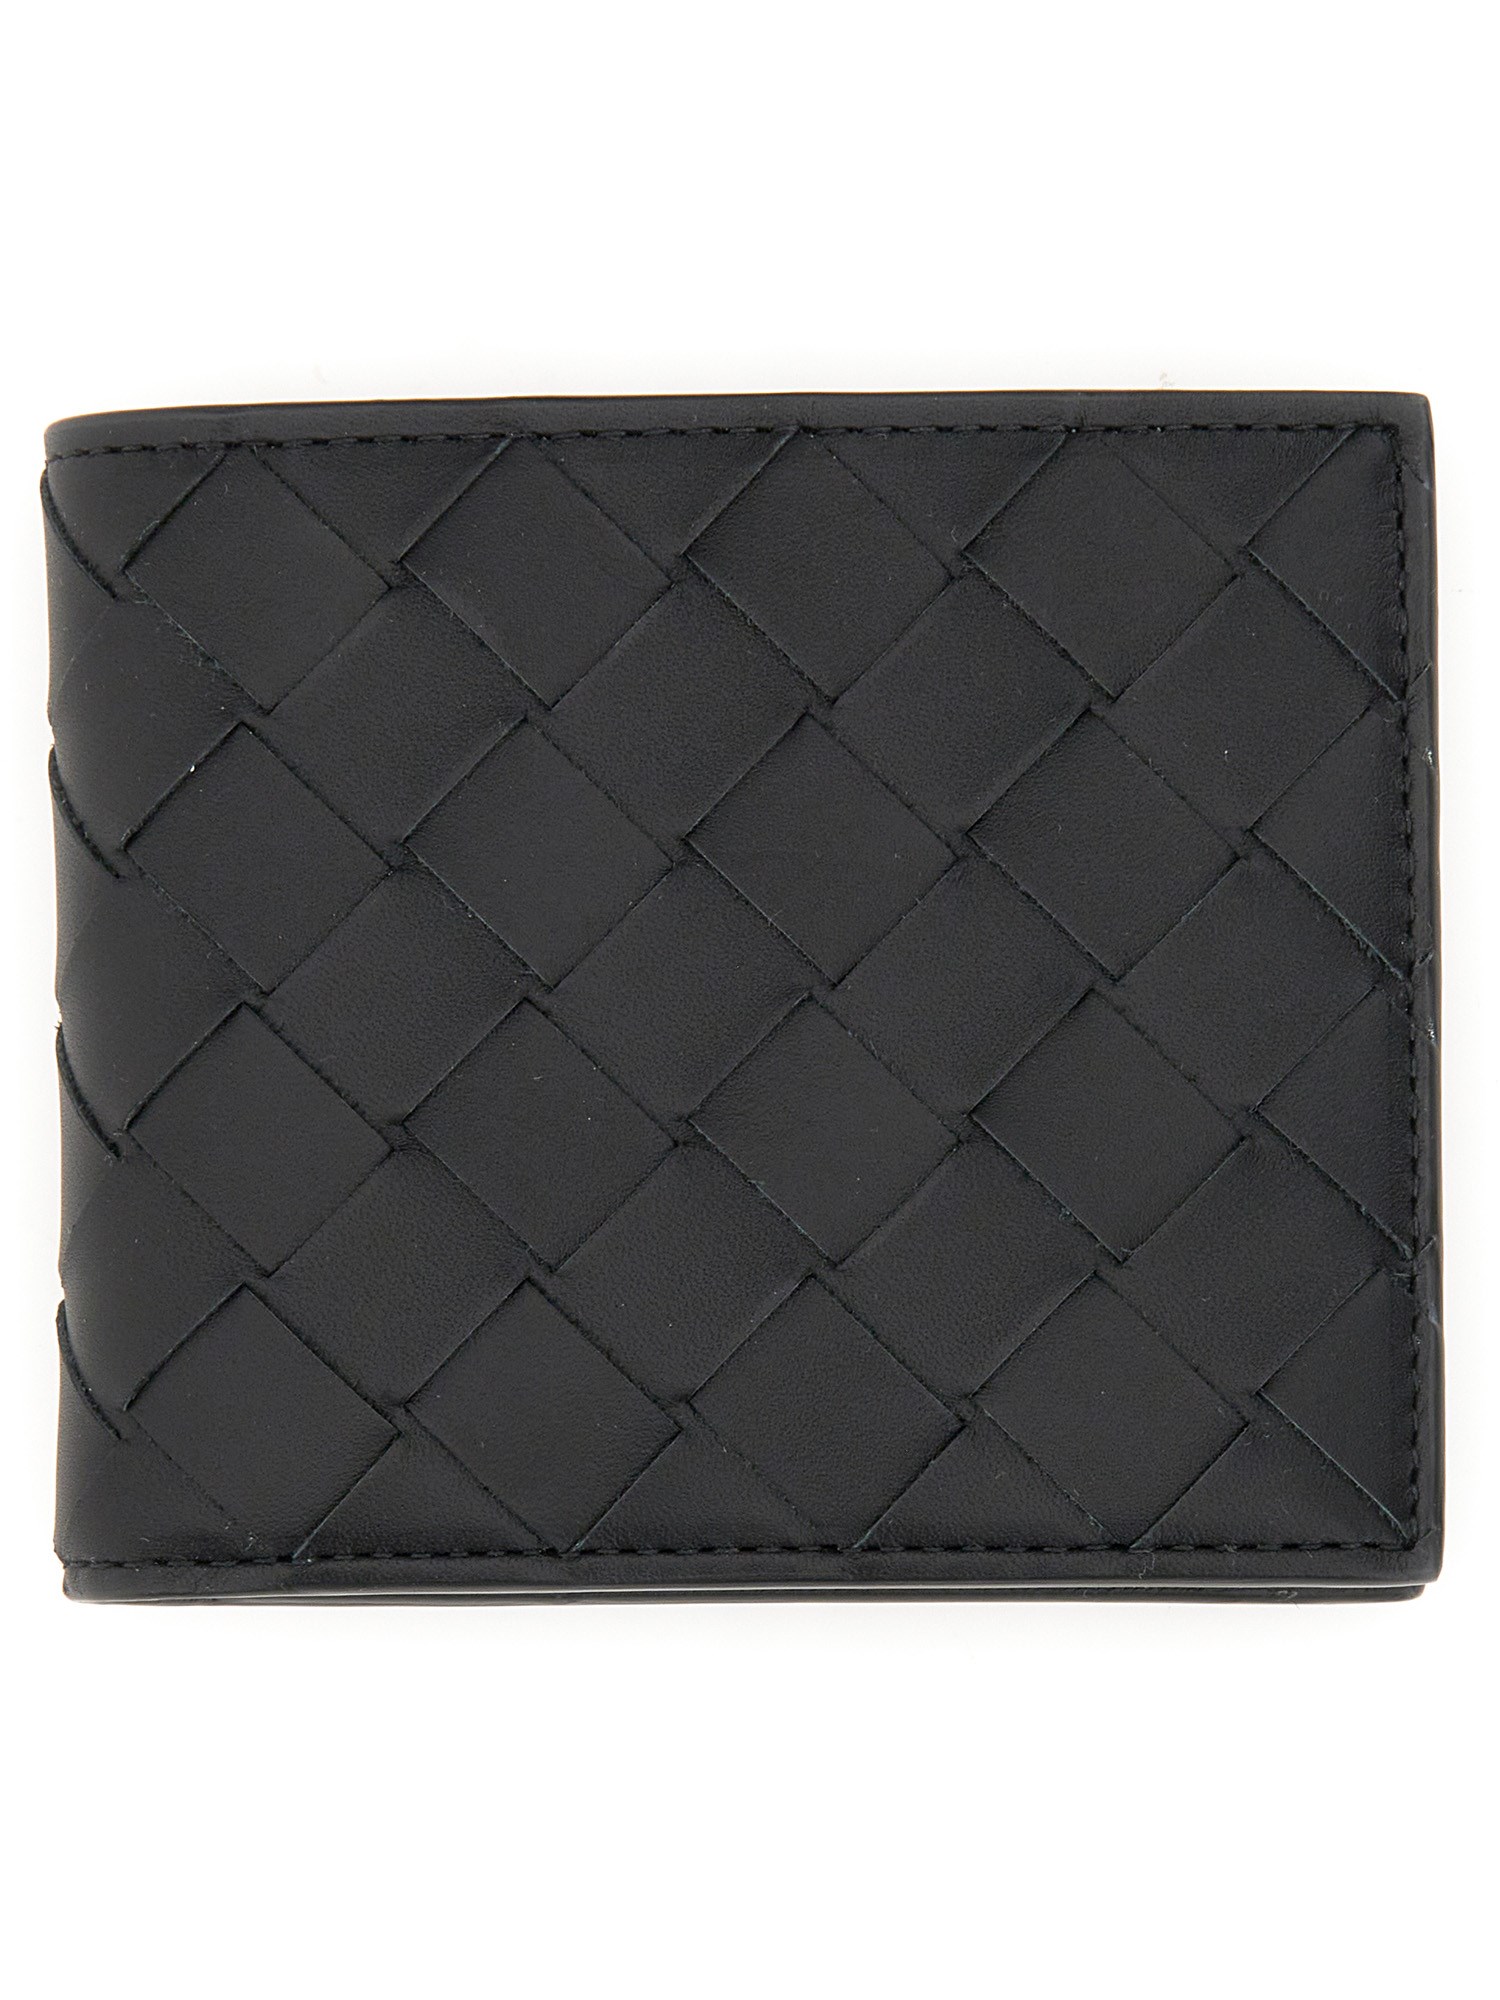 Bottega Veneta bottega veneta bi-fold leather wallet